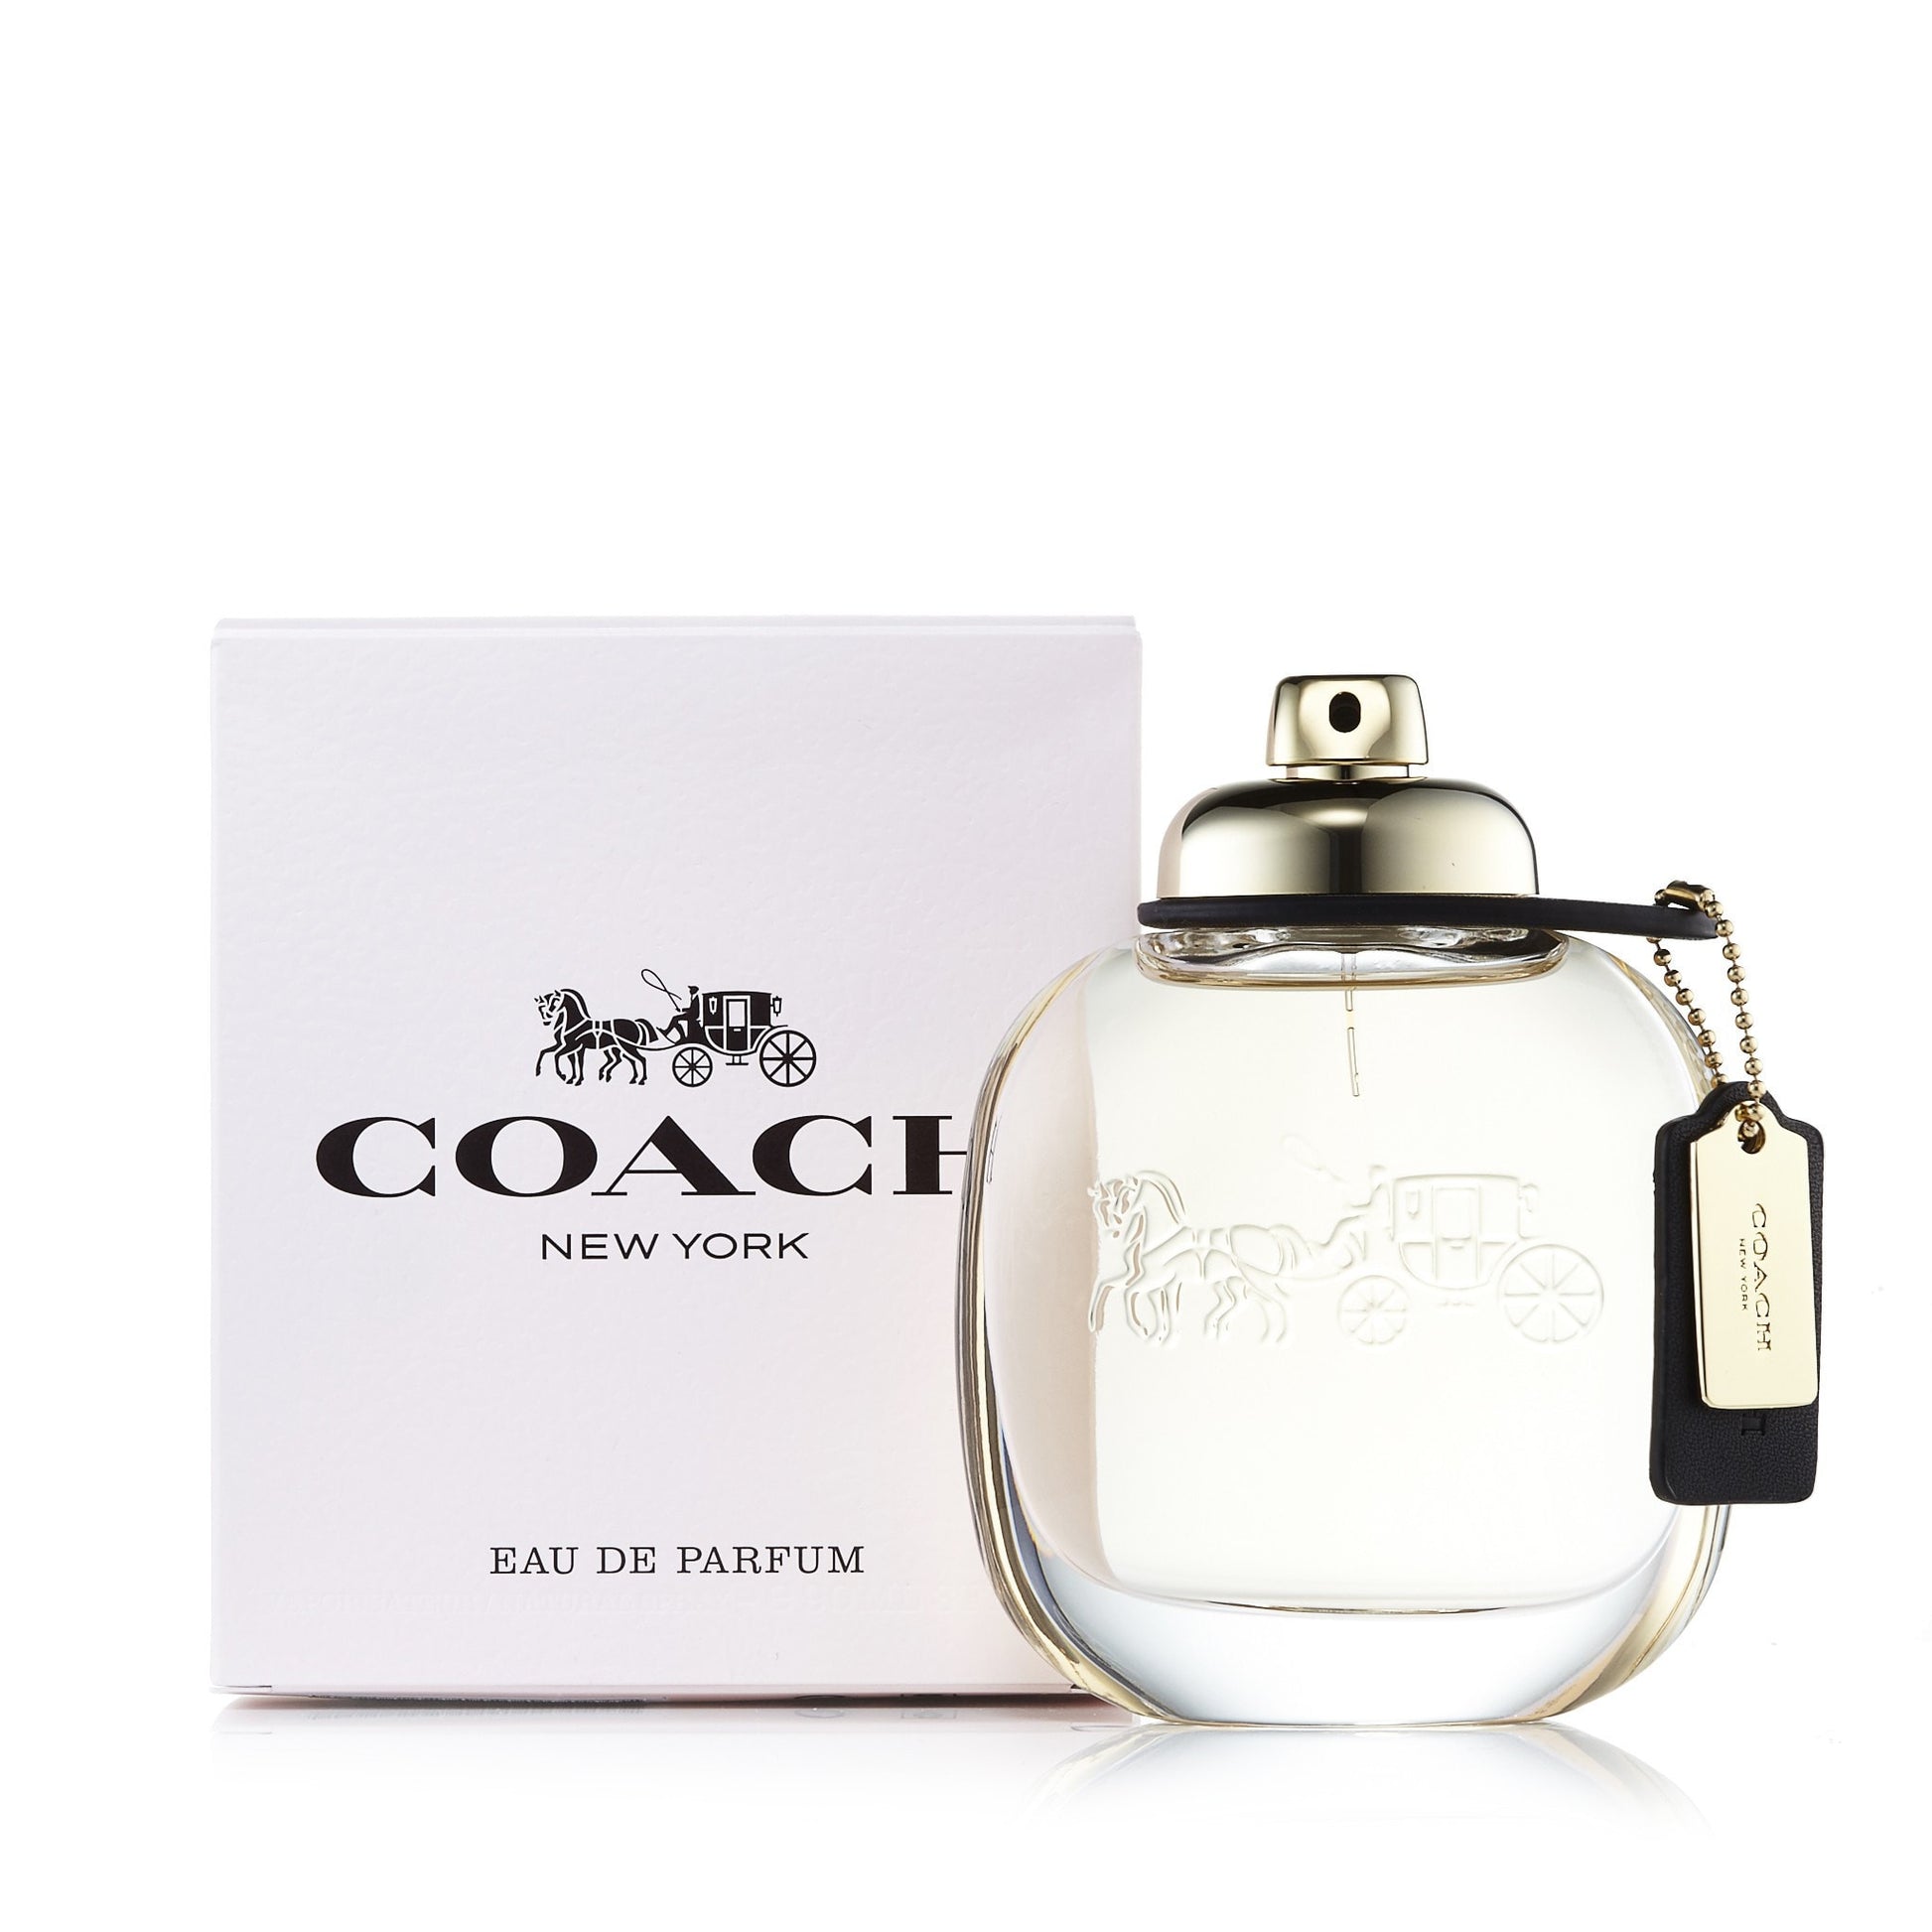  Coach New York Eau de Parfum Spray for Women by Coach 3.0 oz. Click to open in modal